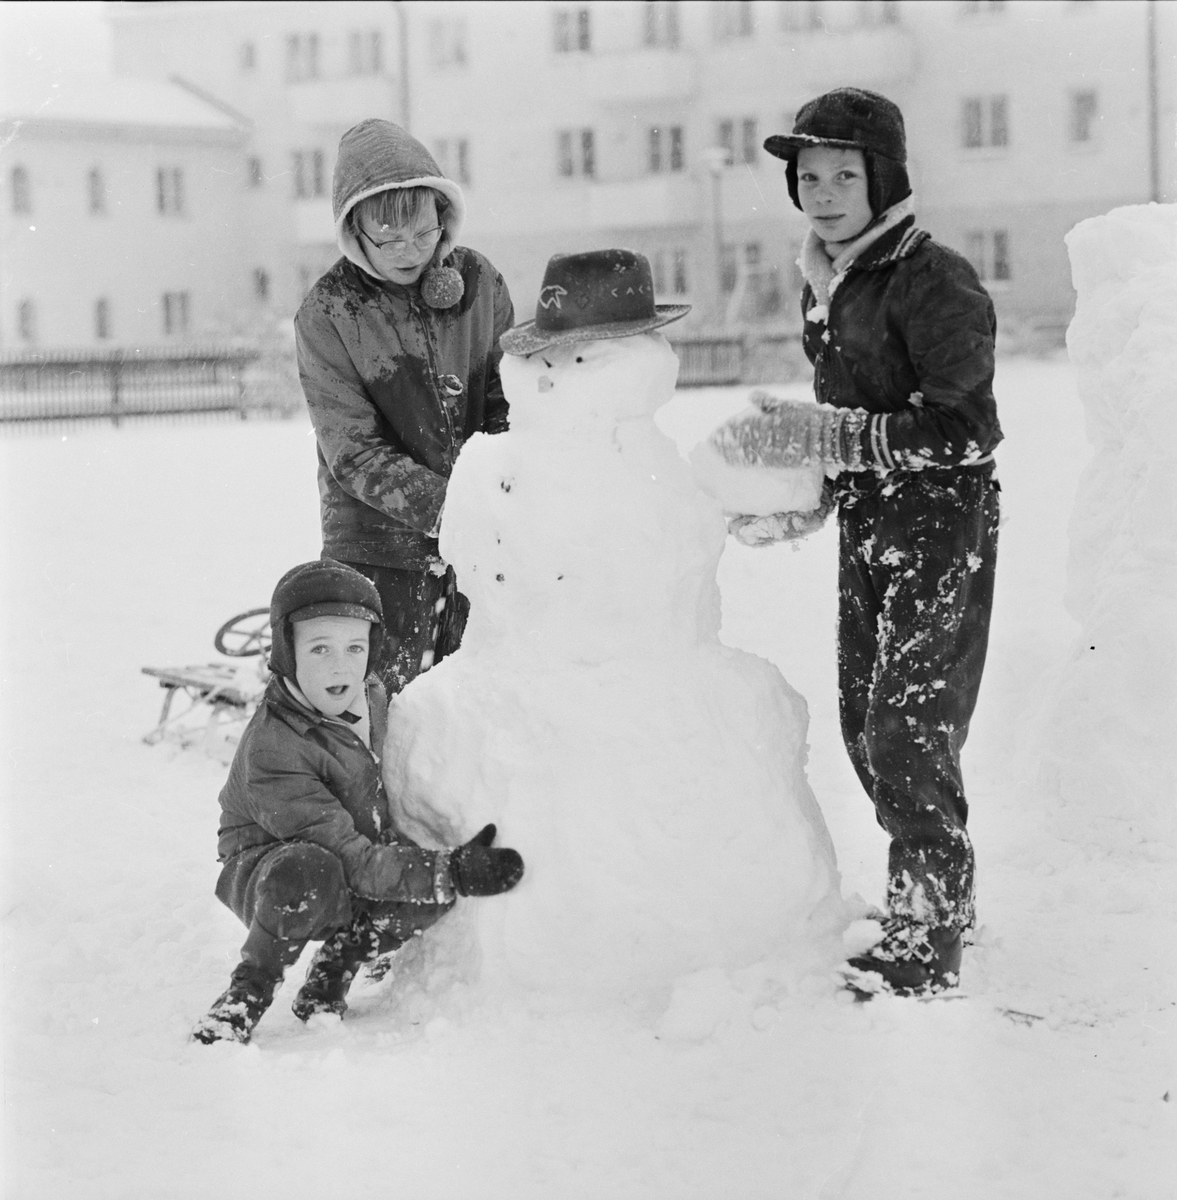 "Första snön", Uppsala november 1956